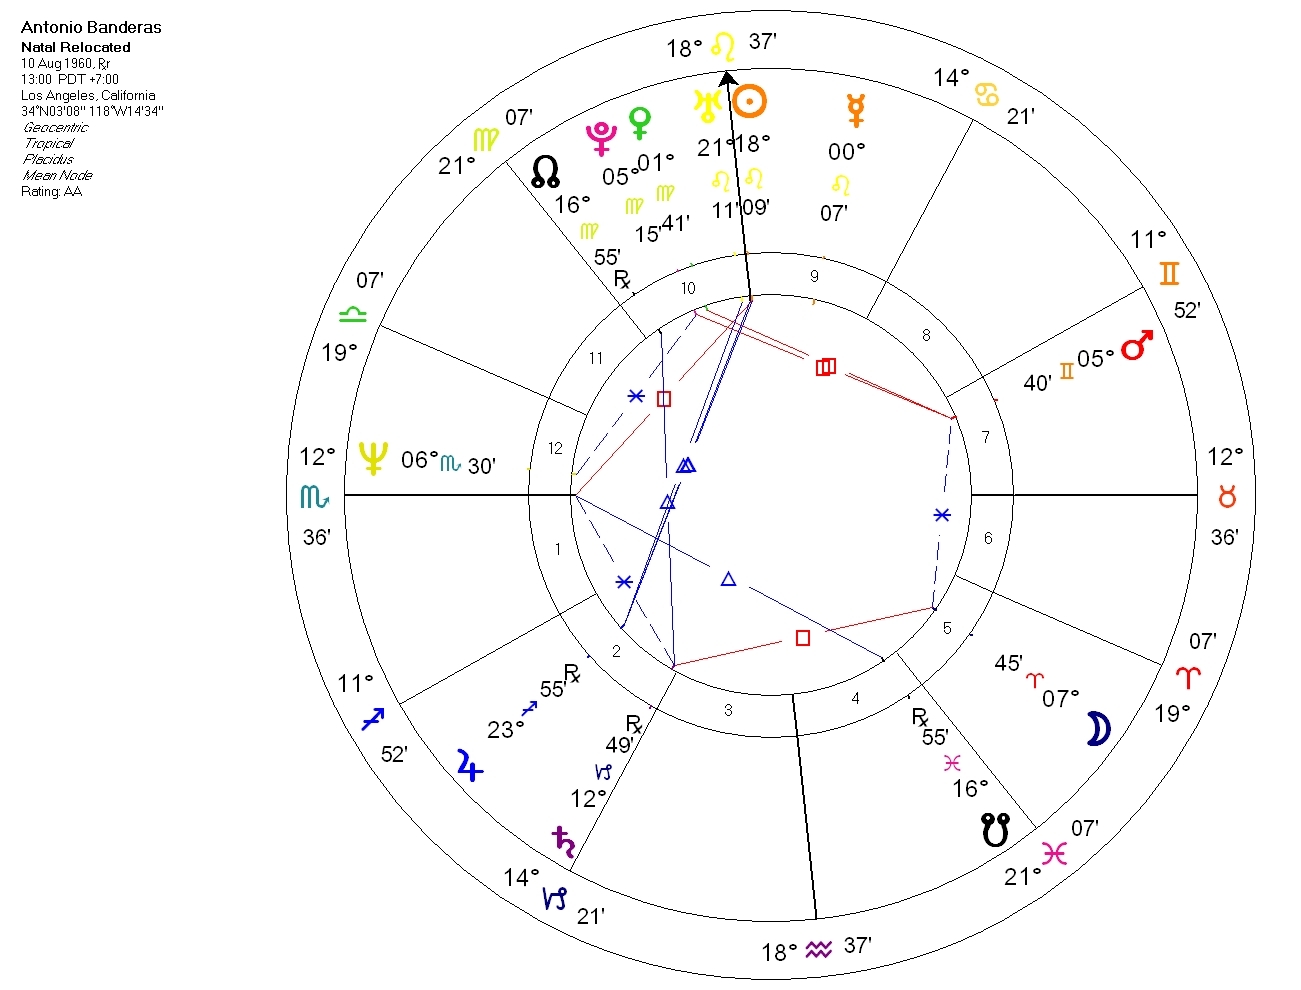 Antonio Banderas - horoskop na Los Angeles